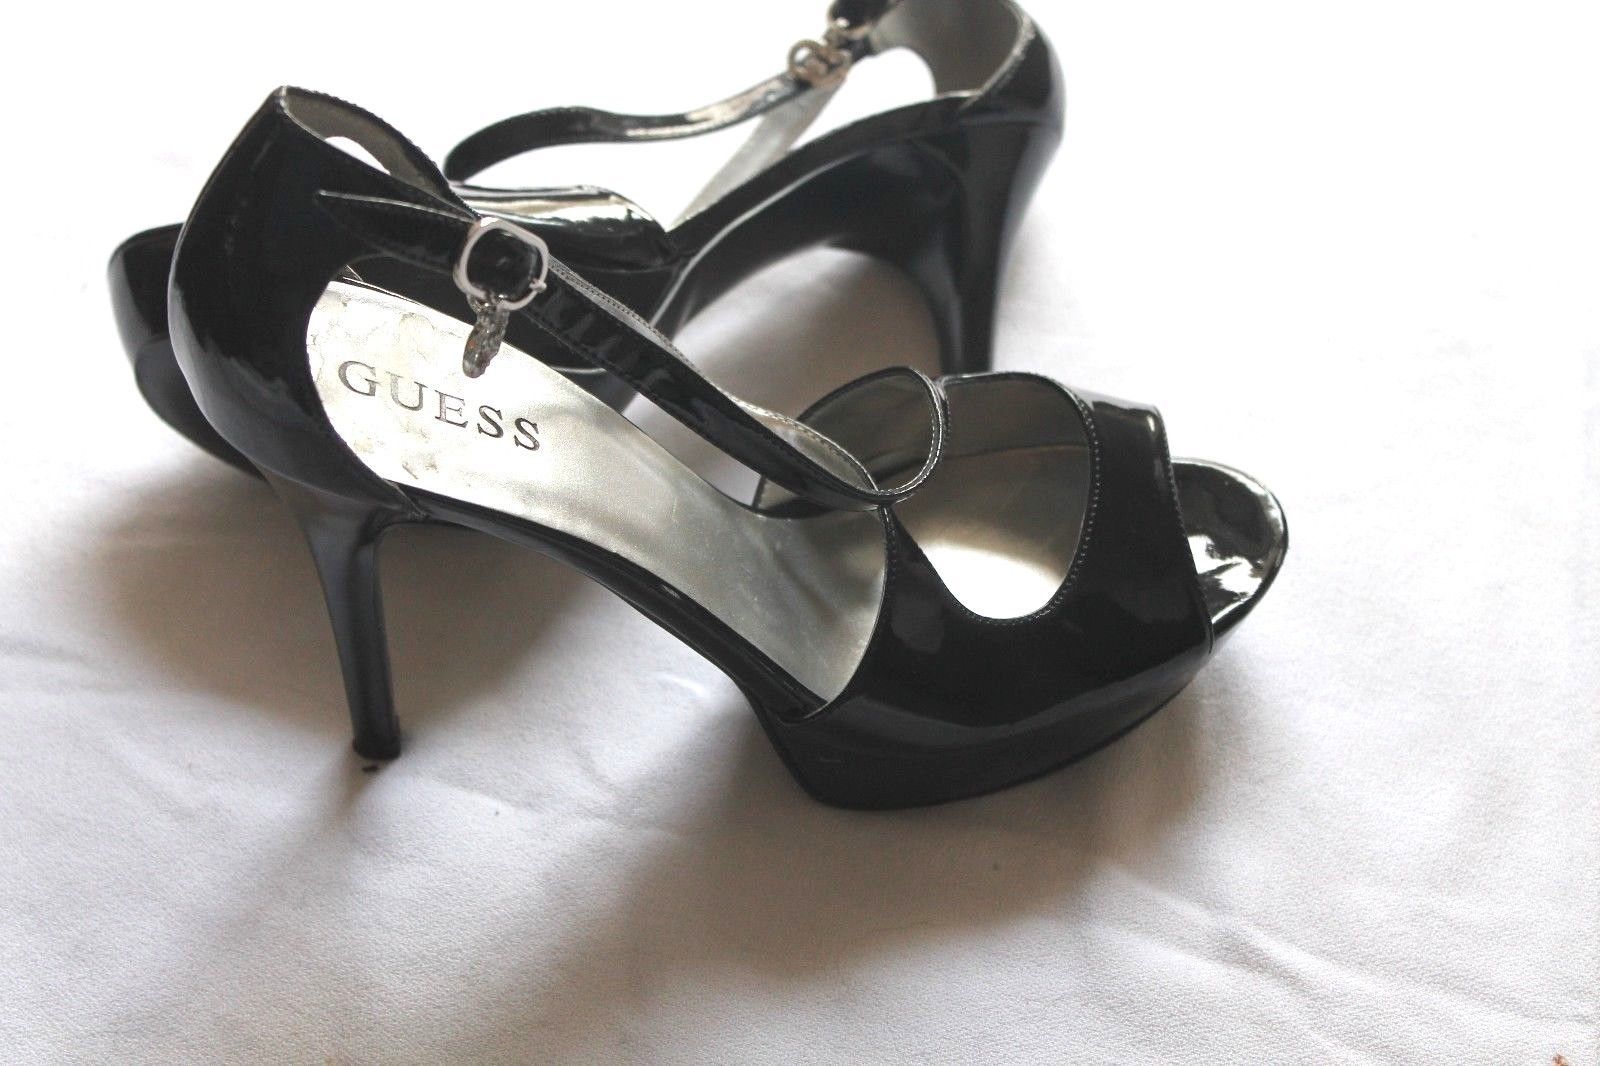 Primary image for Guess SHARLENE High Heel Platform Pumps Sandals Black Patent Size 8.5 